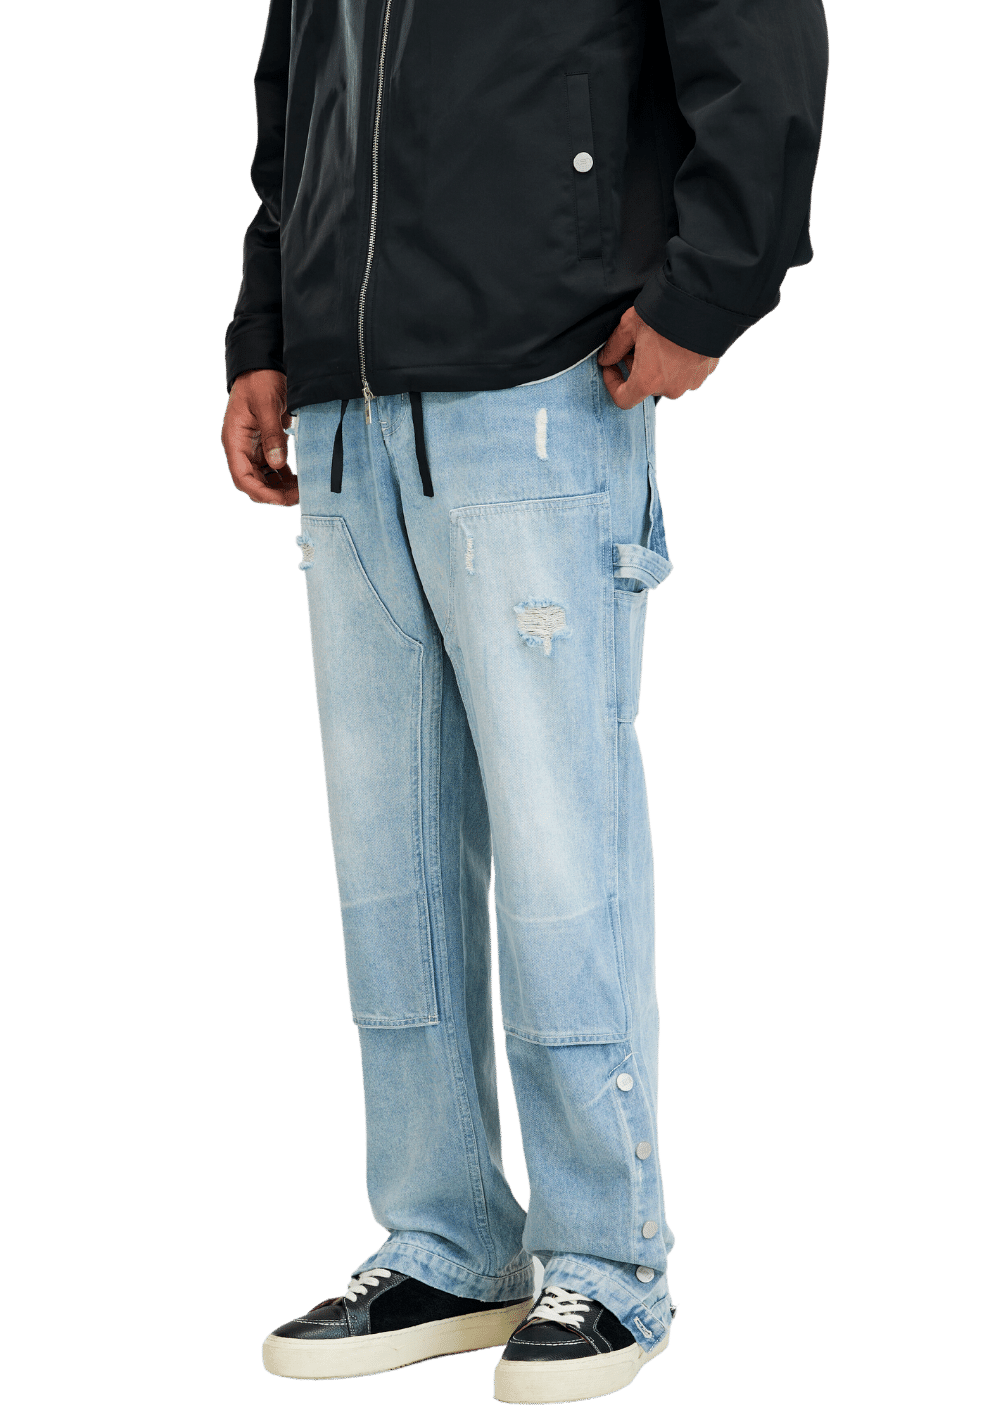 Washed Carpenter Jeans - PSYLOS 1, Washed Carpenter Jeans, Pants, Boneless, PSYLOS 1